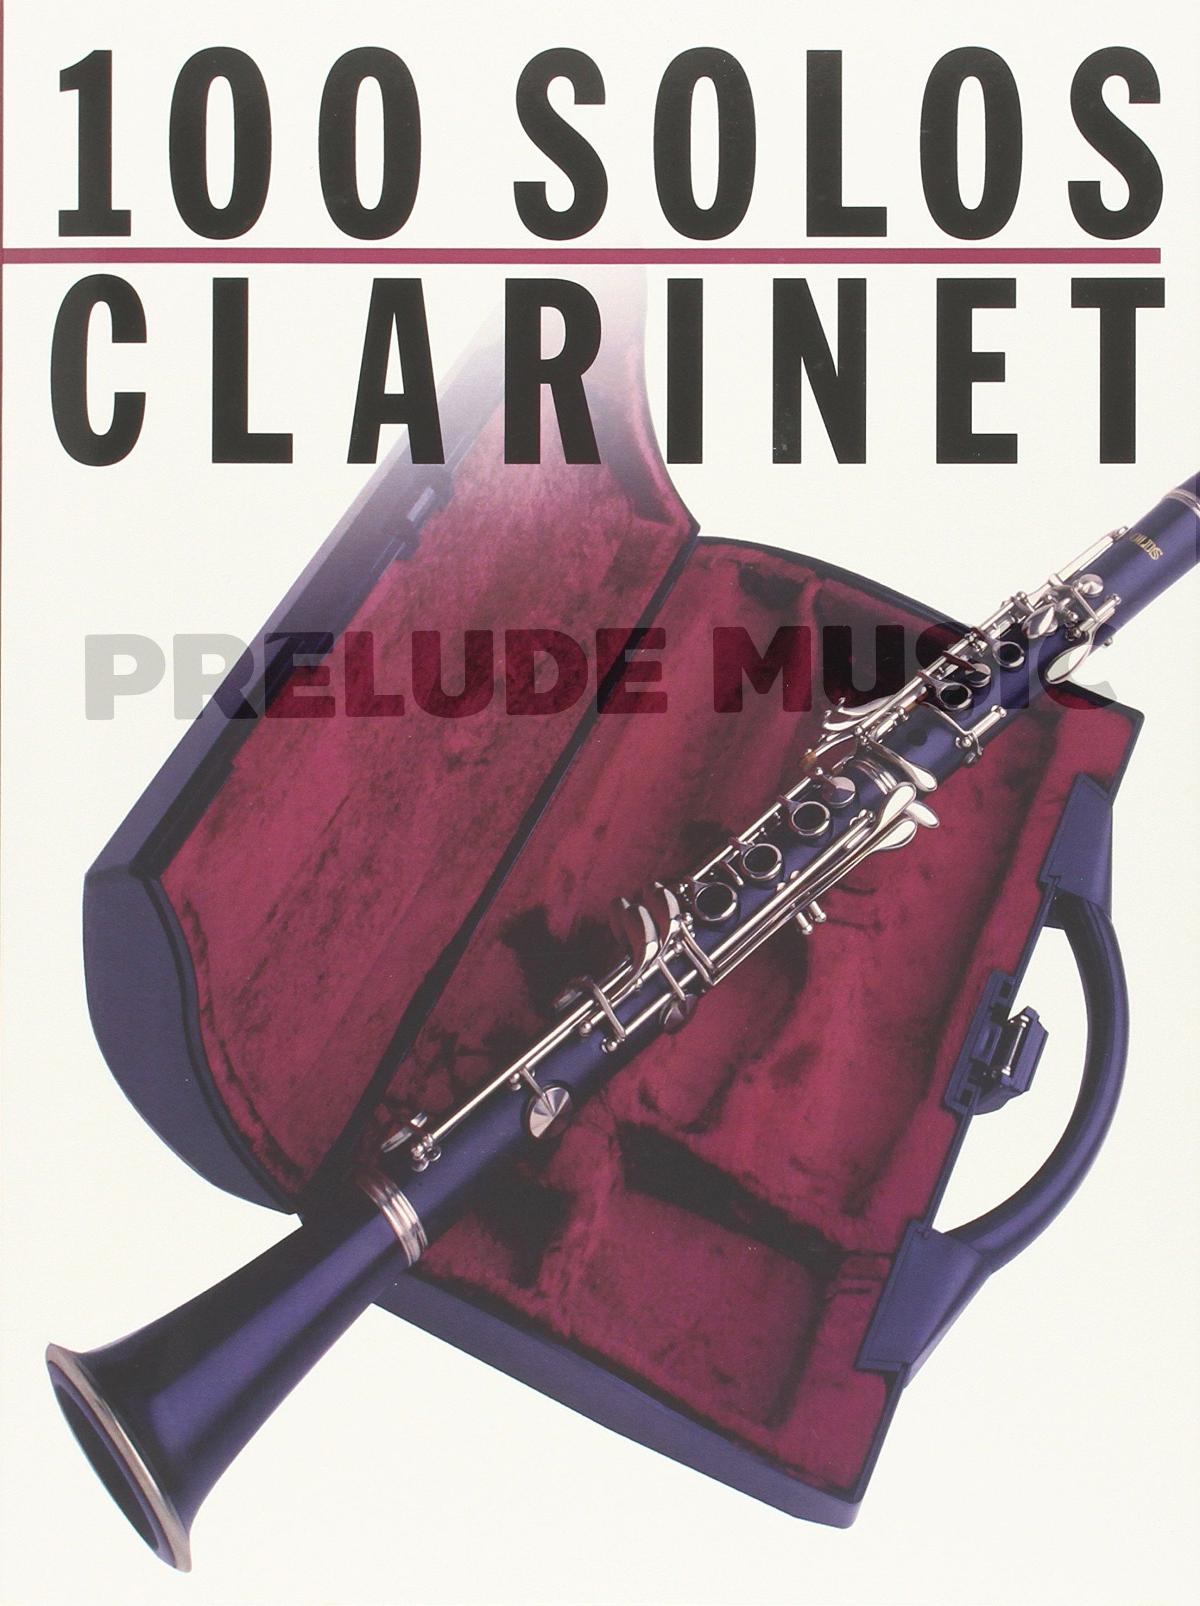 100 Solos Clarinet